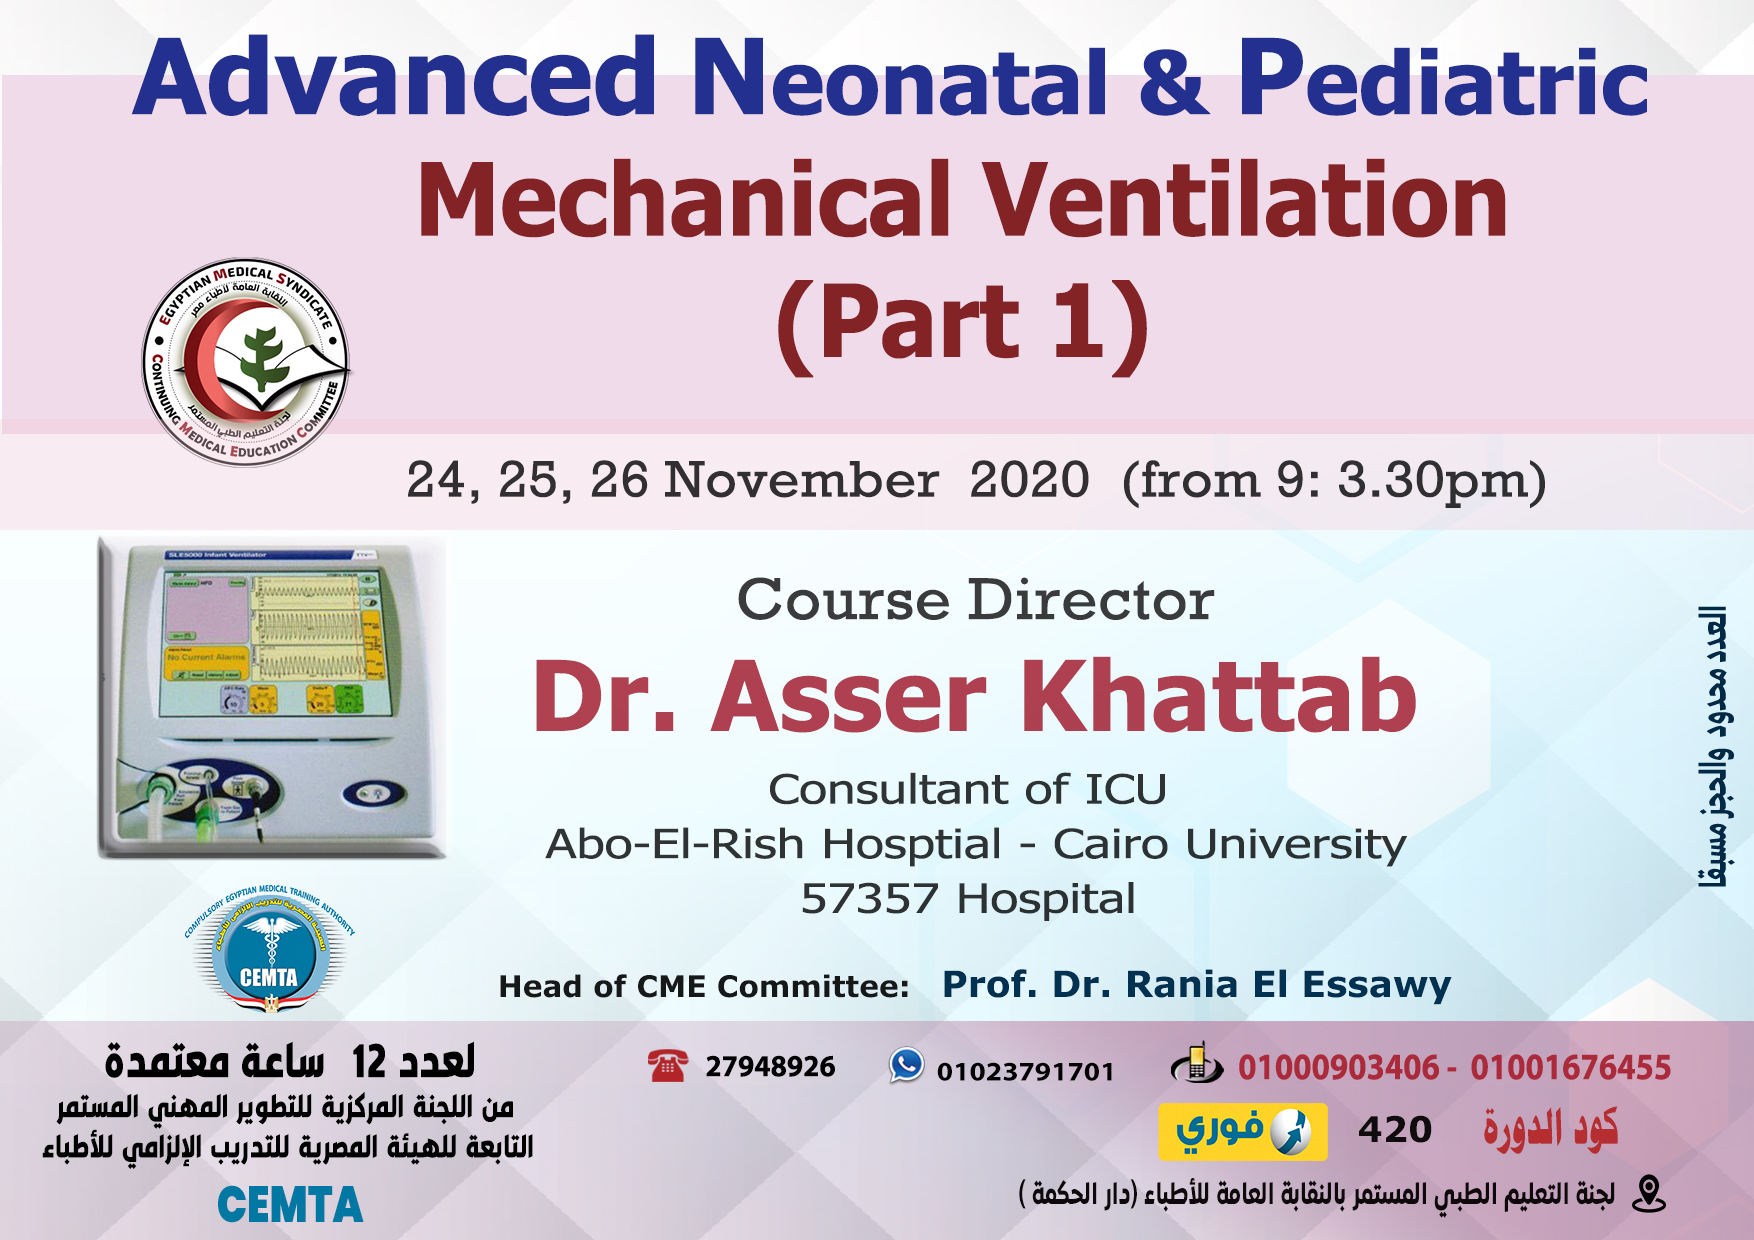 Advanced Neonatal & Pediatric